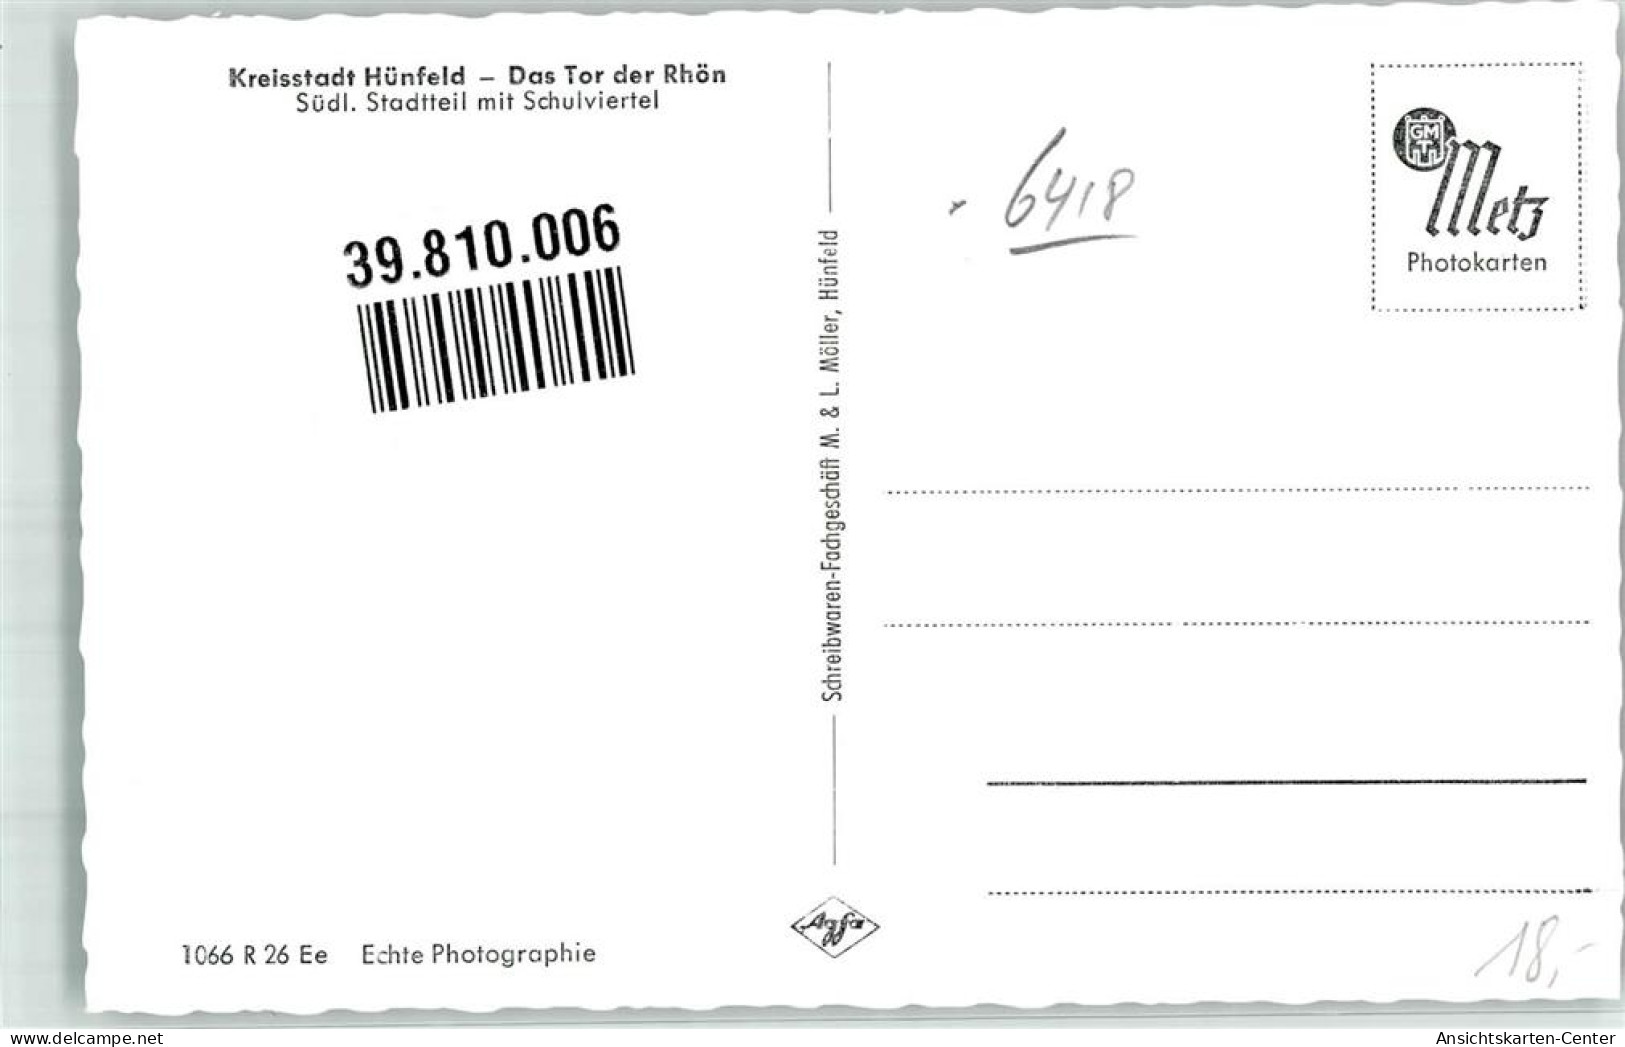 39810006 - Huenfeld - Huenfeld